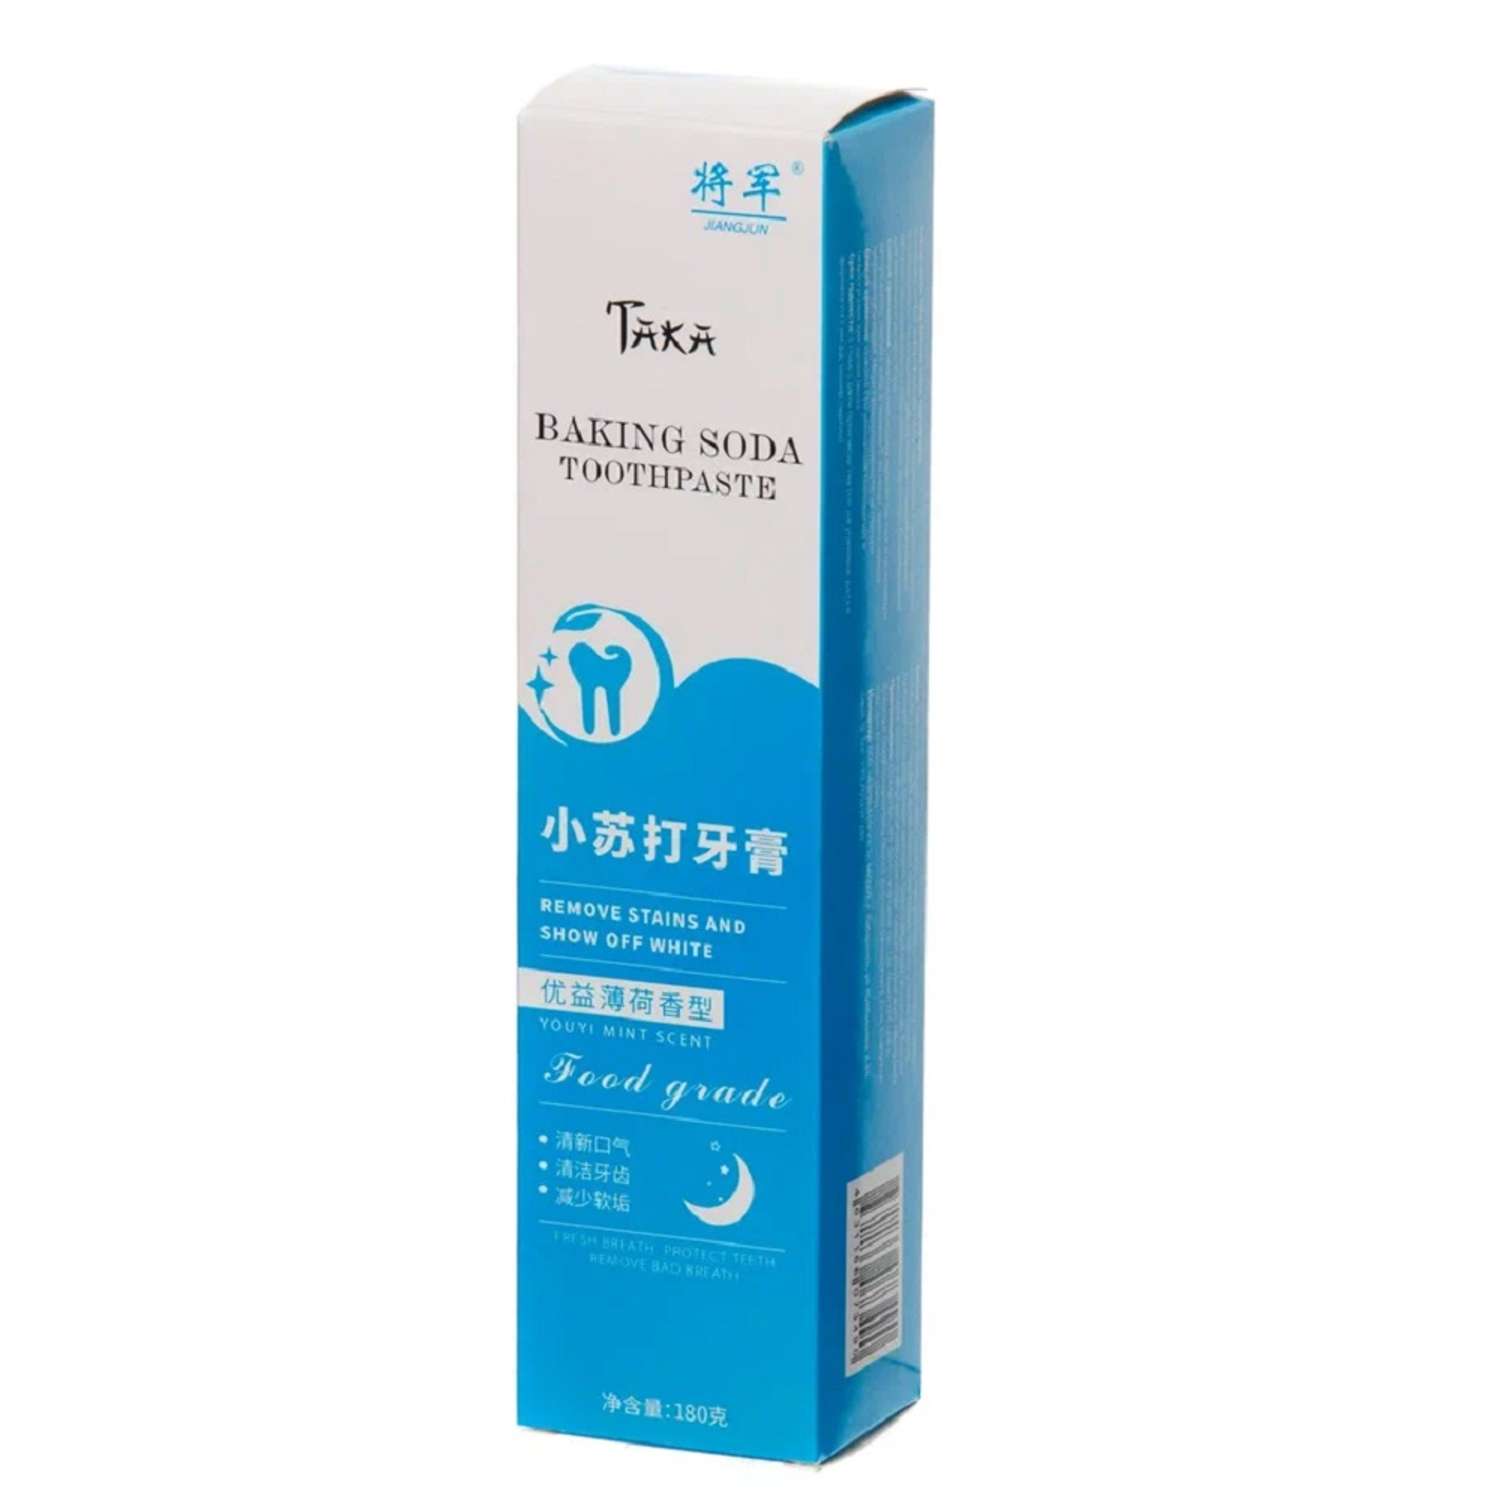 Зубная паста TAKA Health Отбеливающая 180 гр набор 2 шт - фото 5